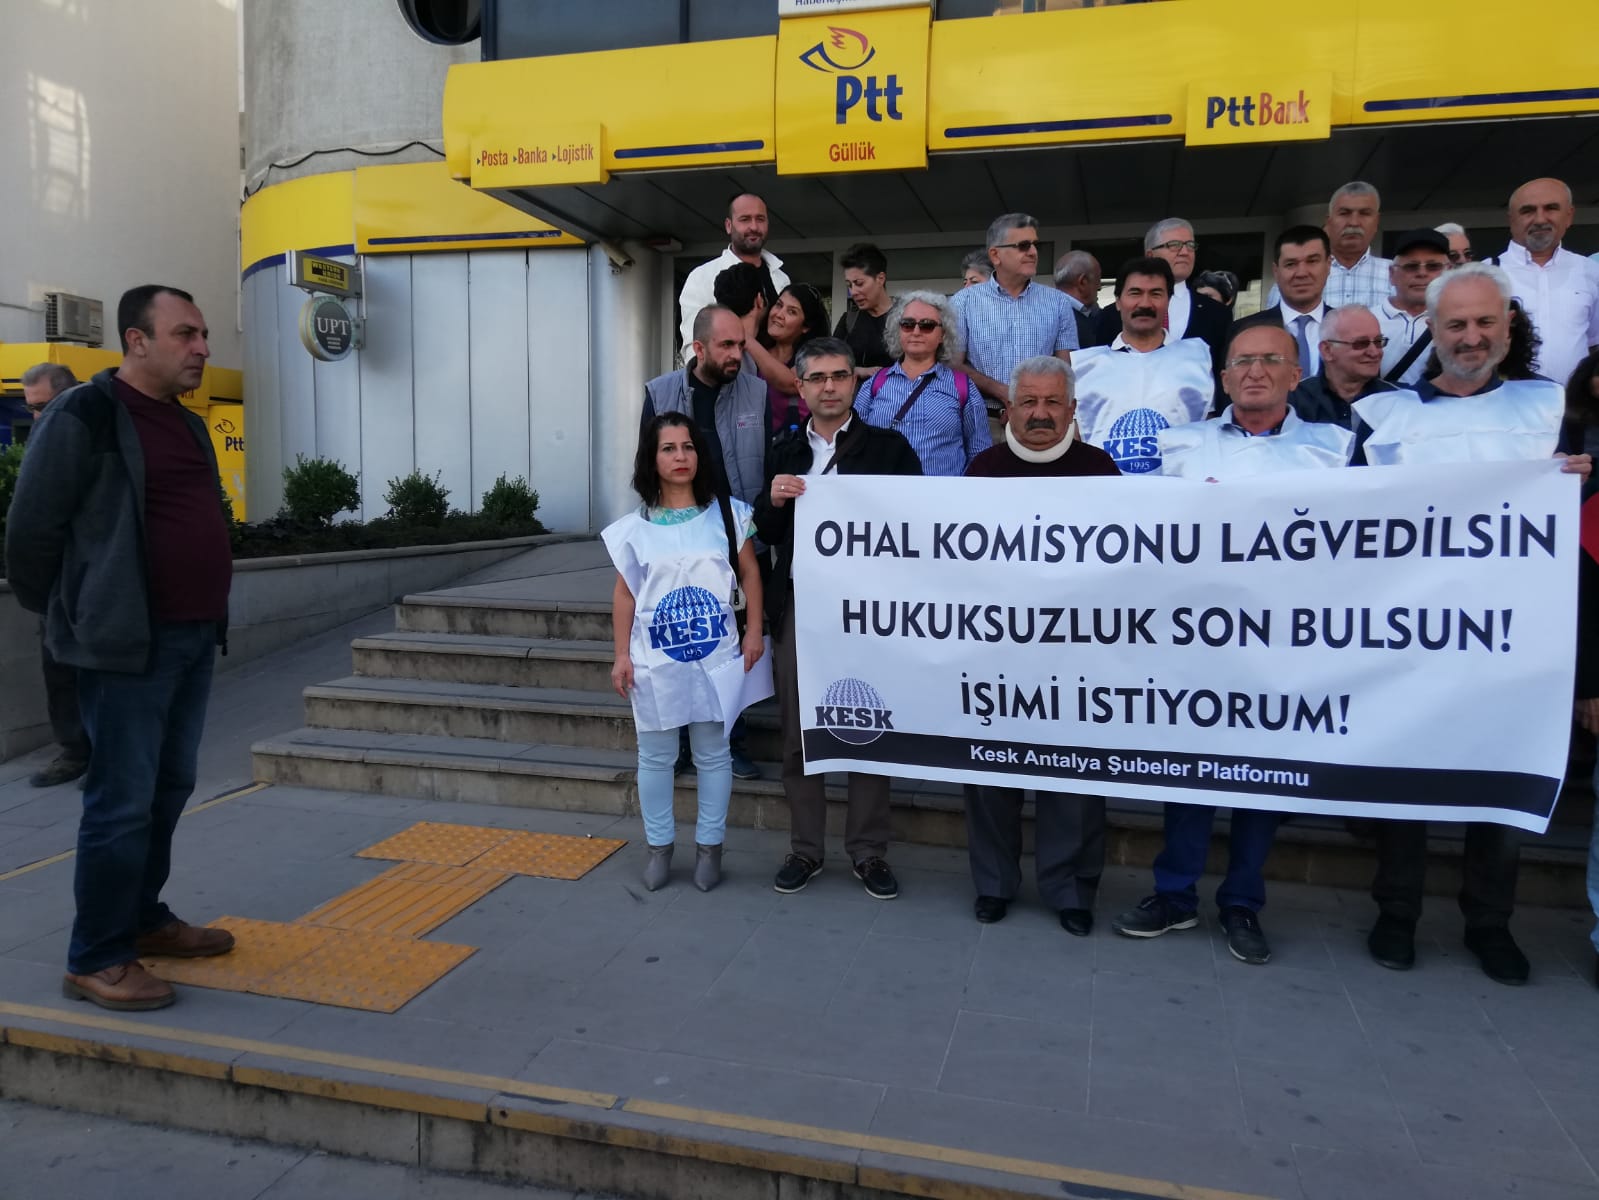 KESK Antalya Şubeler Platformu’ndan Faks Eylemi: OHAL İnceleme Komisyonu Lağvedilip Hukuksal Süreç Başlatılsın